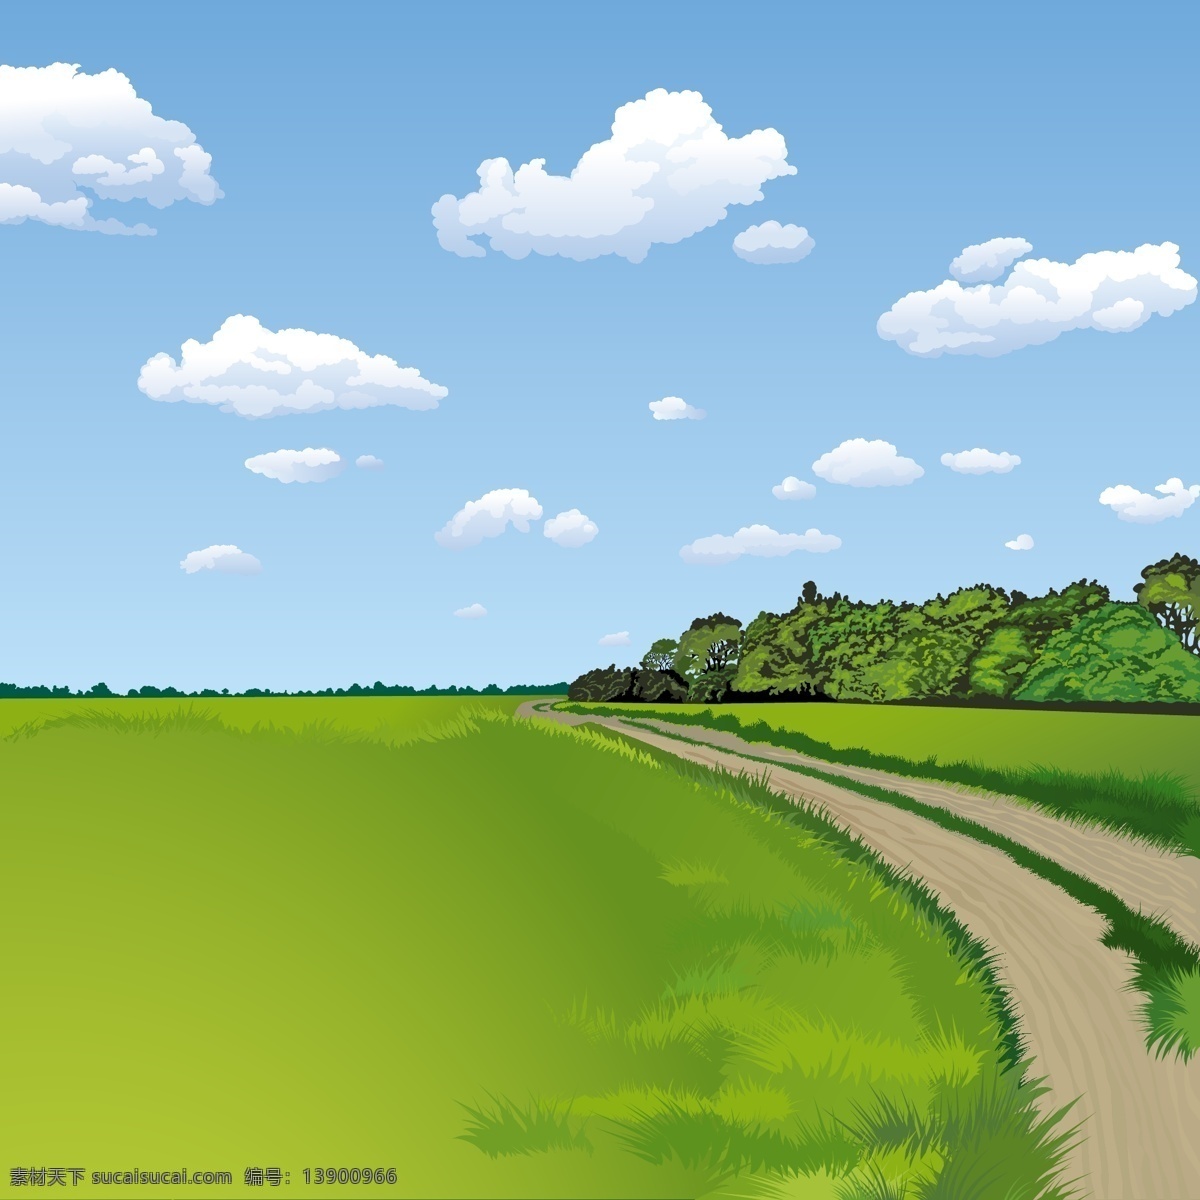 蓝天 白云 风景 图 海报设计素材 绿地 美丽 小路 休闲 自然 其他海报设计